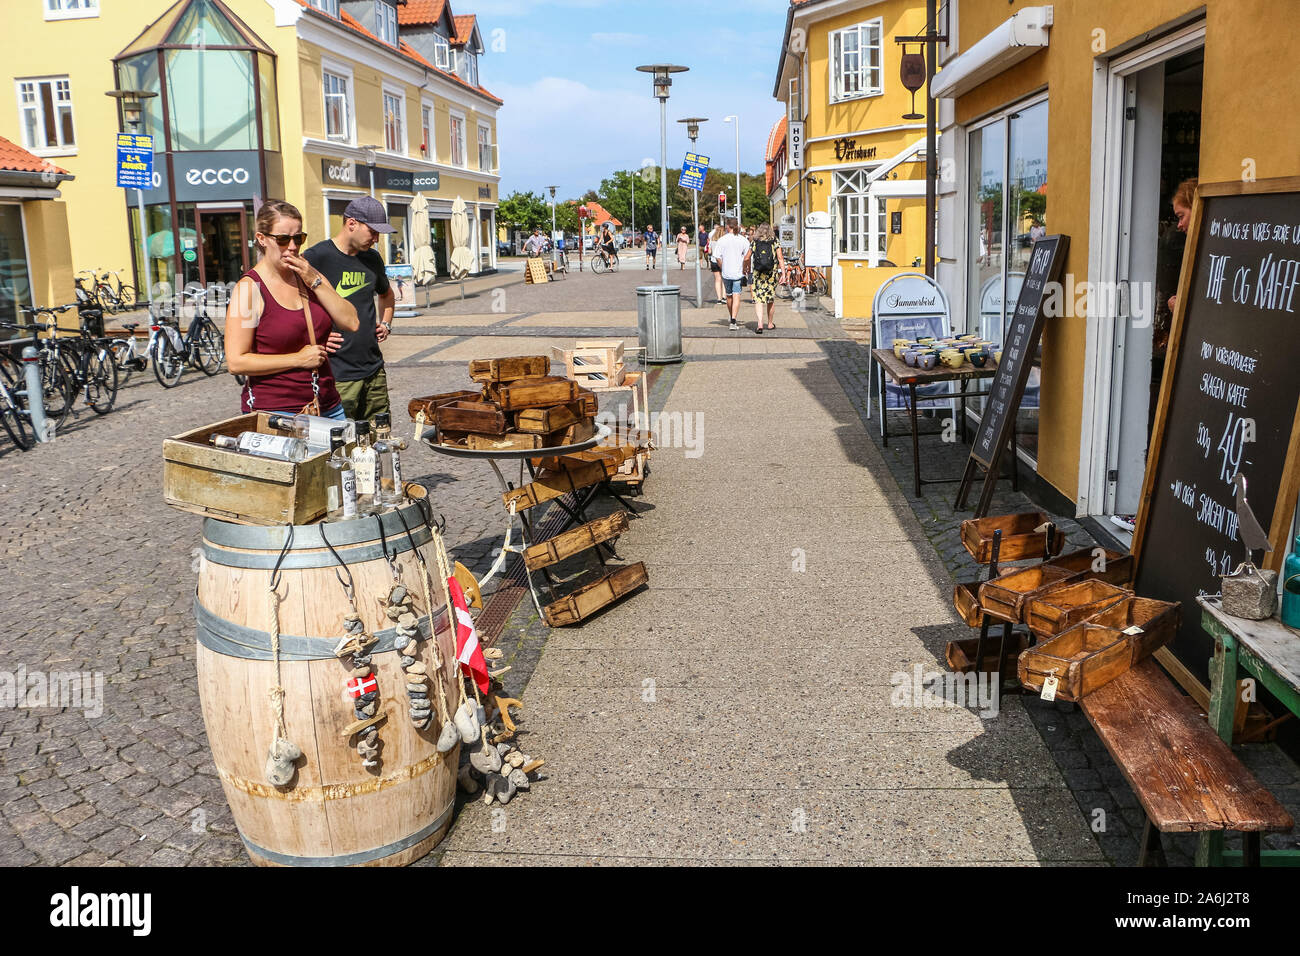 Die Leute, die auf der Suche zu kaufen einige Souvenirs in Skagen, Dänemark gesehen werden am 28. Juli 2019 Skagen ist die nördlichste Stadt Dänemarks, an der Ostküste der Halbinsel Skagen Odde ganz im Norden von Jütland. © Michal Fludra/Alamy leben Nachrichten Stockfoto